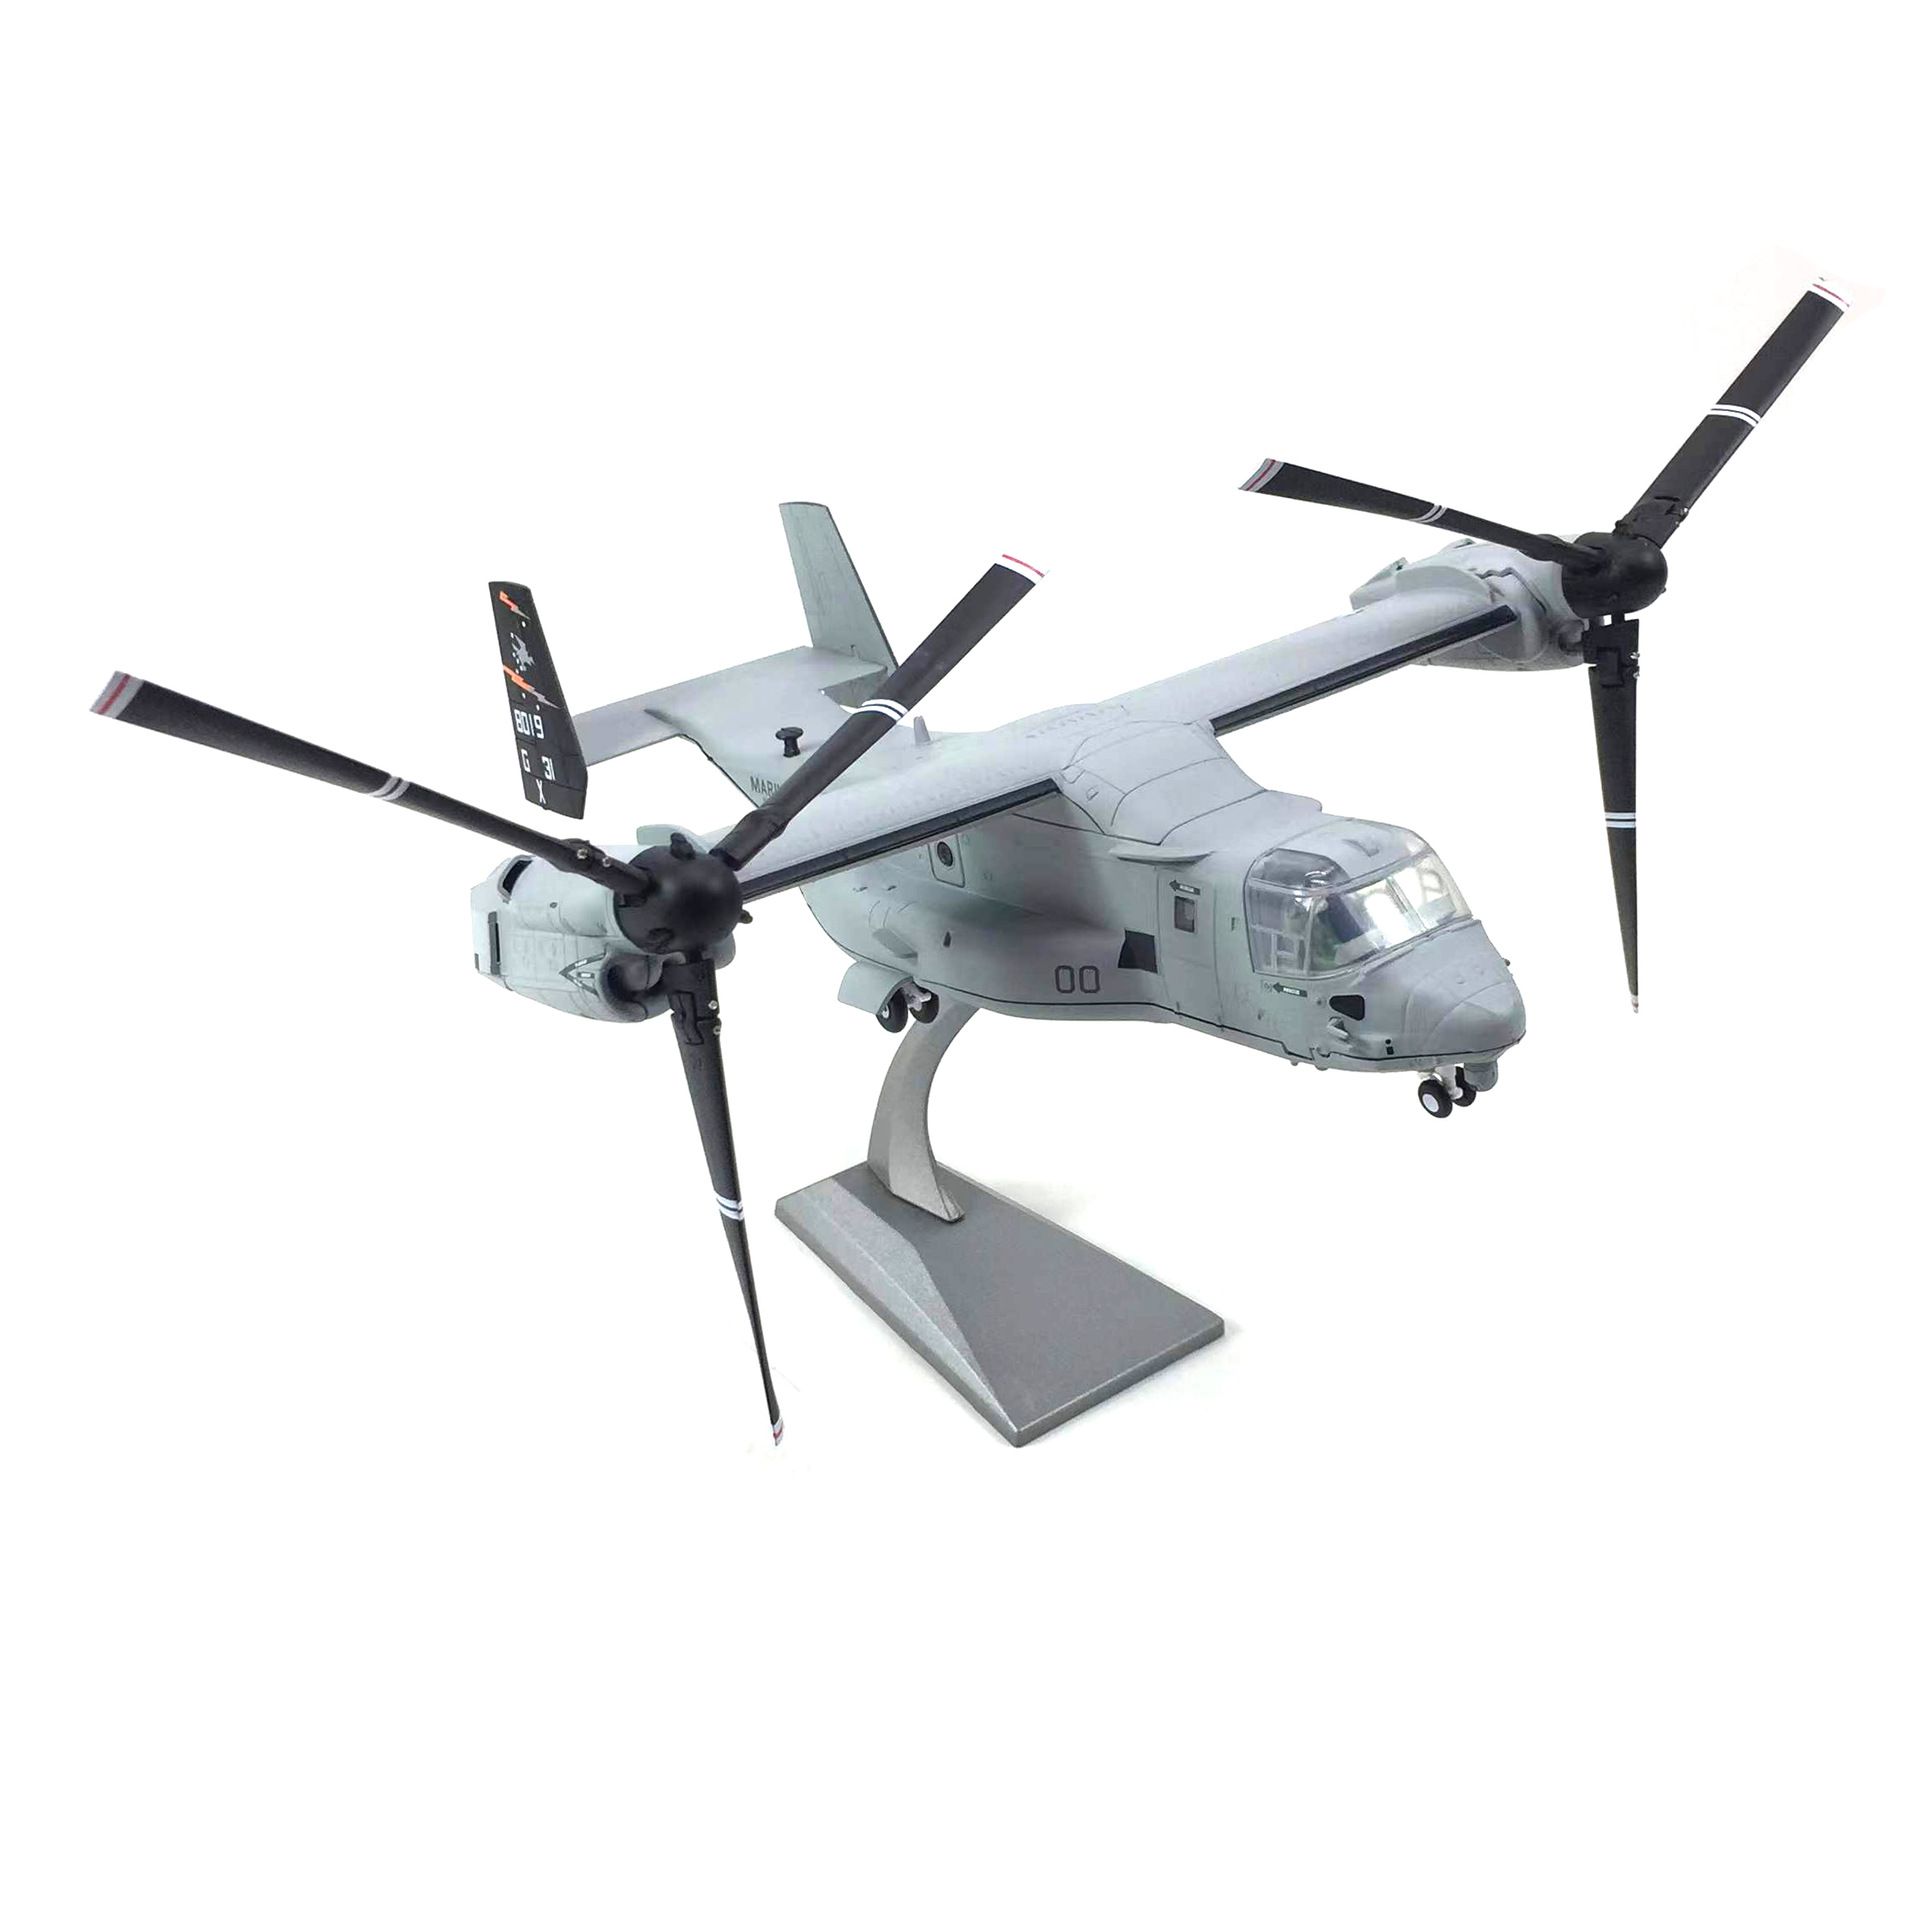  Mô hình máy bay vận chuyển cánh quạt Boeing Bell V-22 Osprey Marines grey tỉ lệ 1:72 Ns models MBQS034 